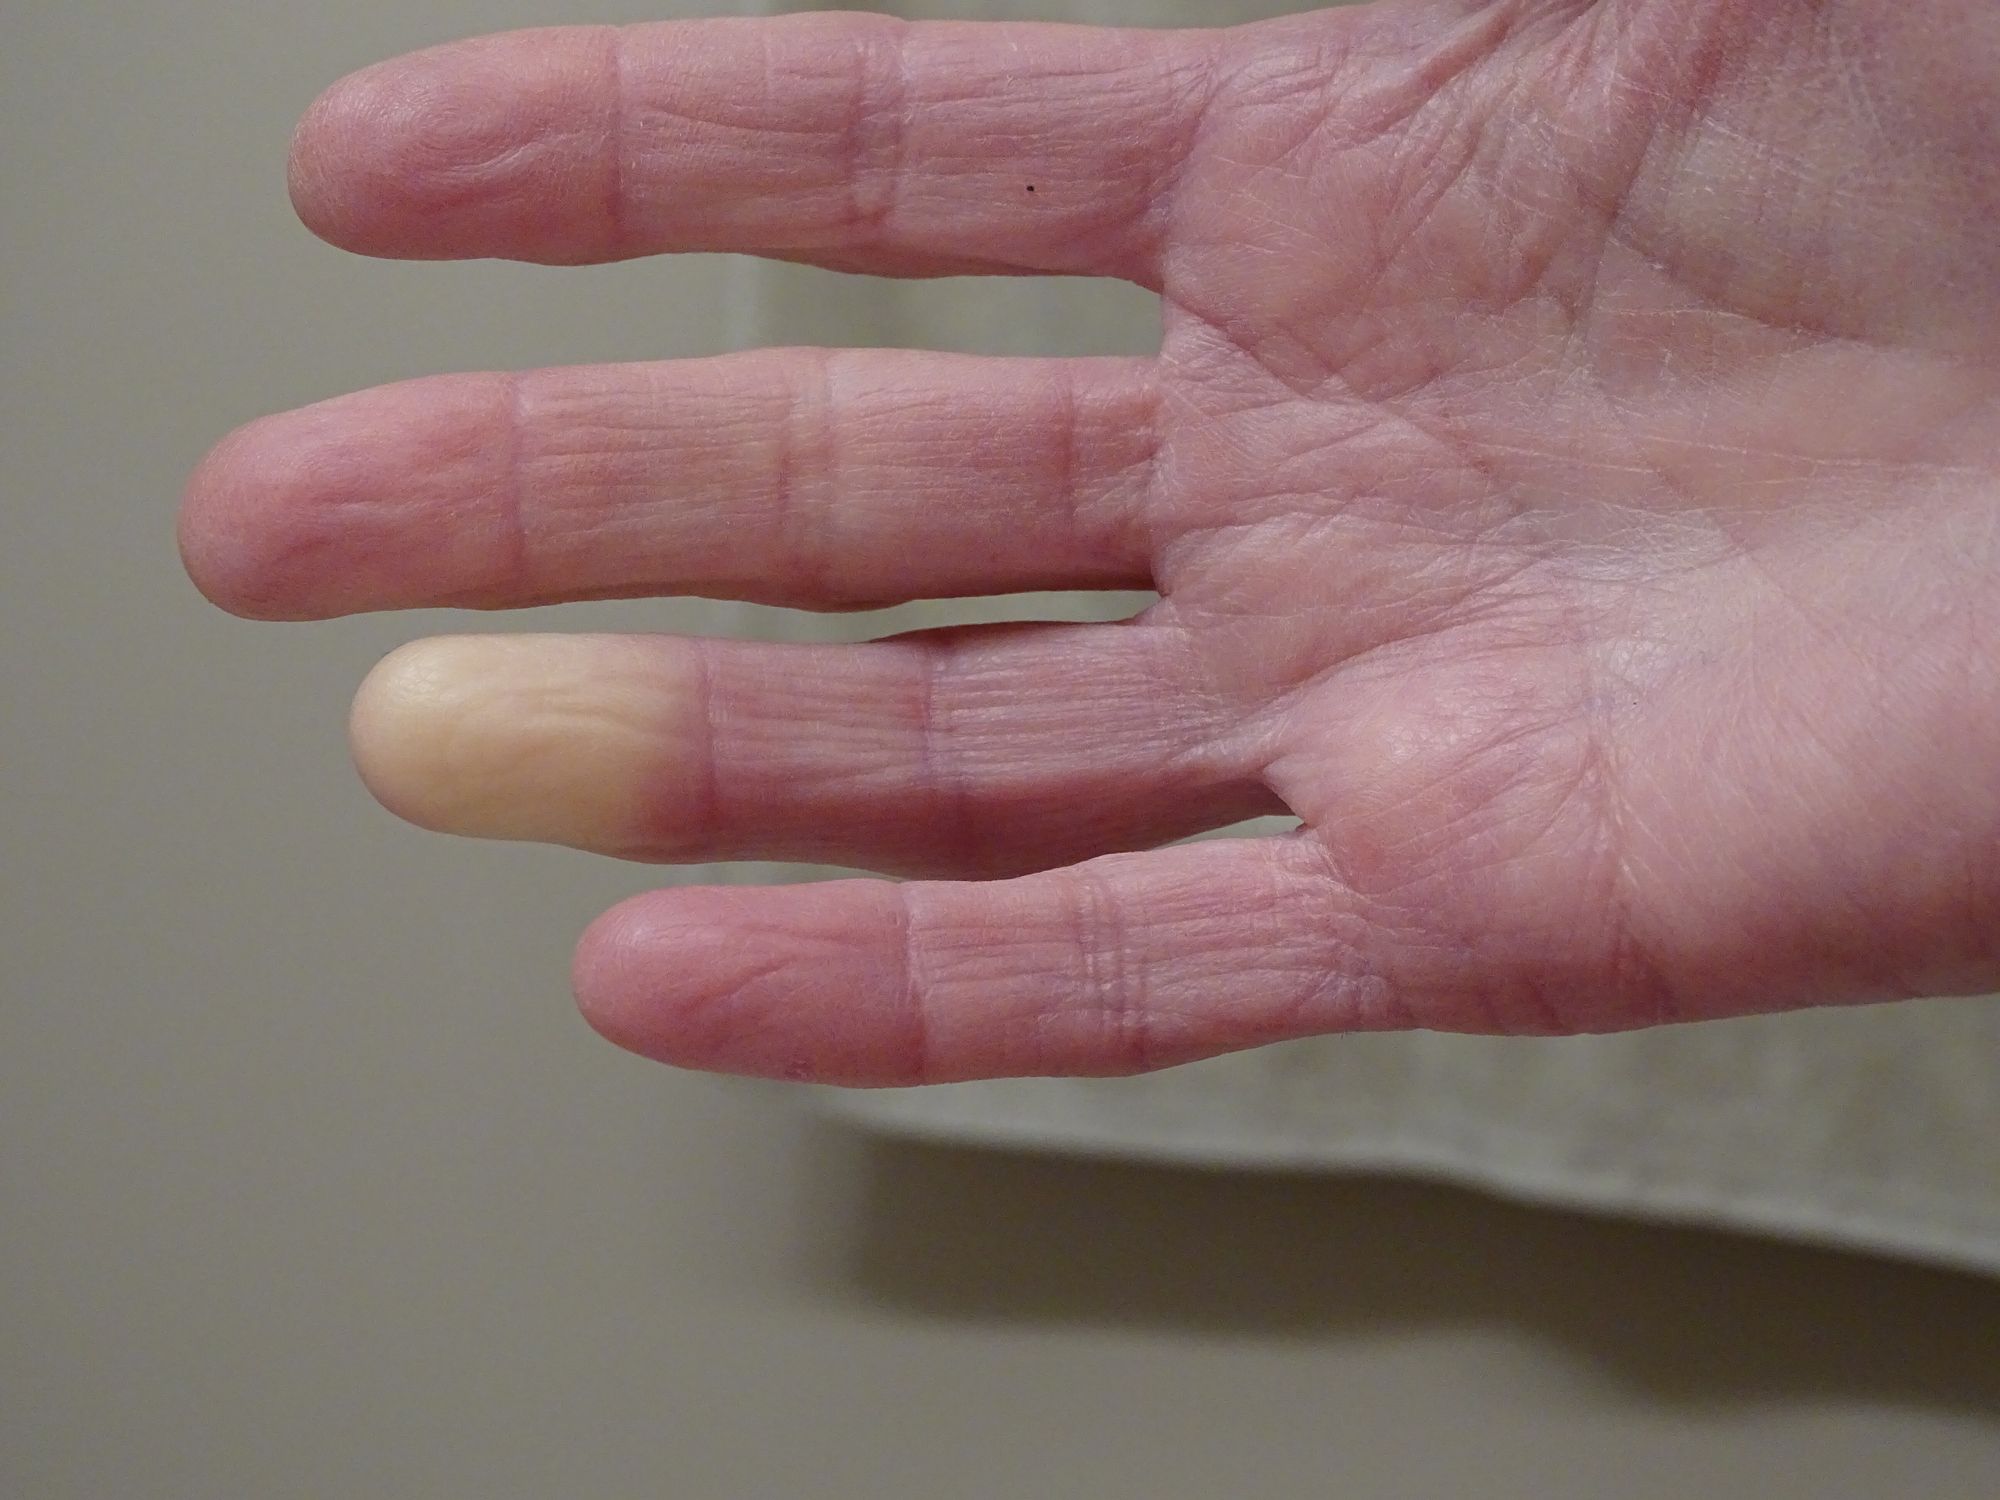 Witte gevoelloze vingers of het koud is? Dit kan de oorzaak zijn